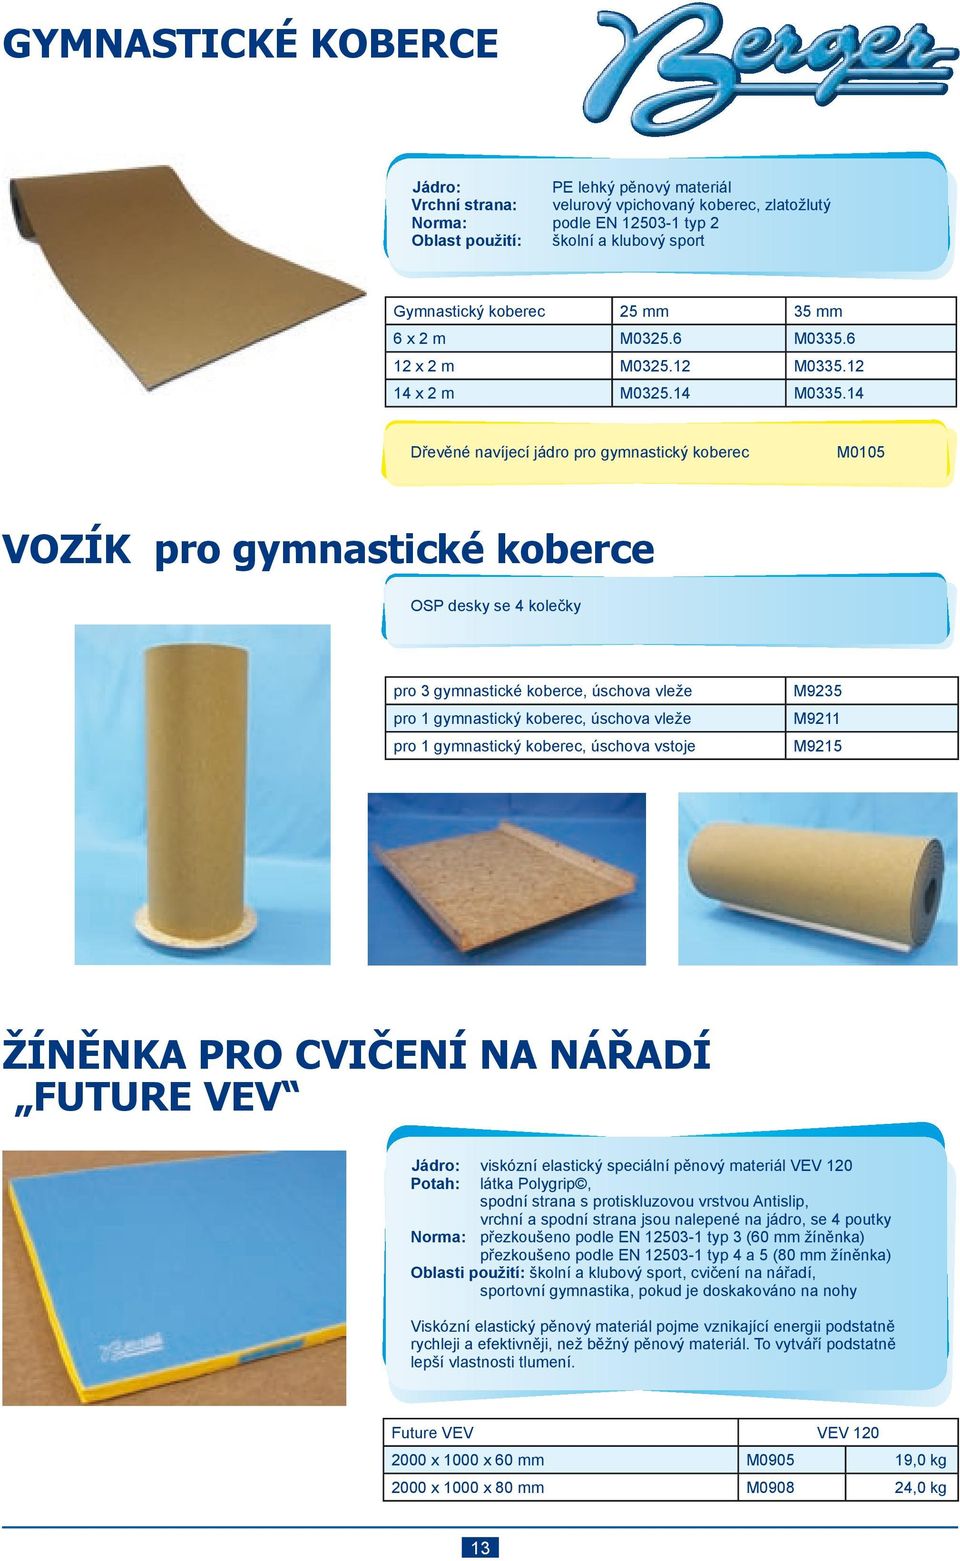 14 Dřevěné navíjecí jádro pro gymnastický koberec M0105 VOZÍK pro gymnastické koberce OSP desky se 4 kolečky pro 3 gymnastické koberce, úschova vleže pro 1 gymnastický koberec, úschova vleže pro 1